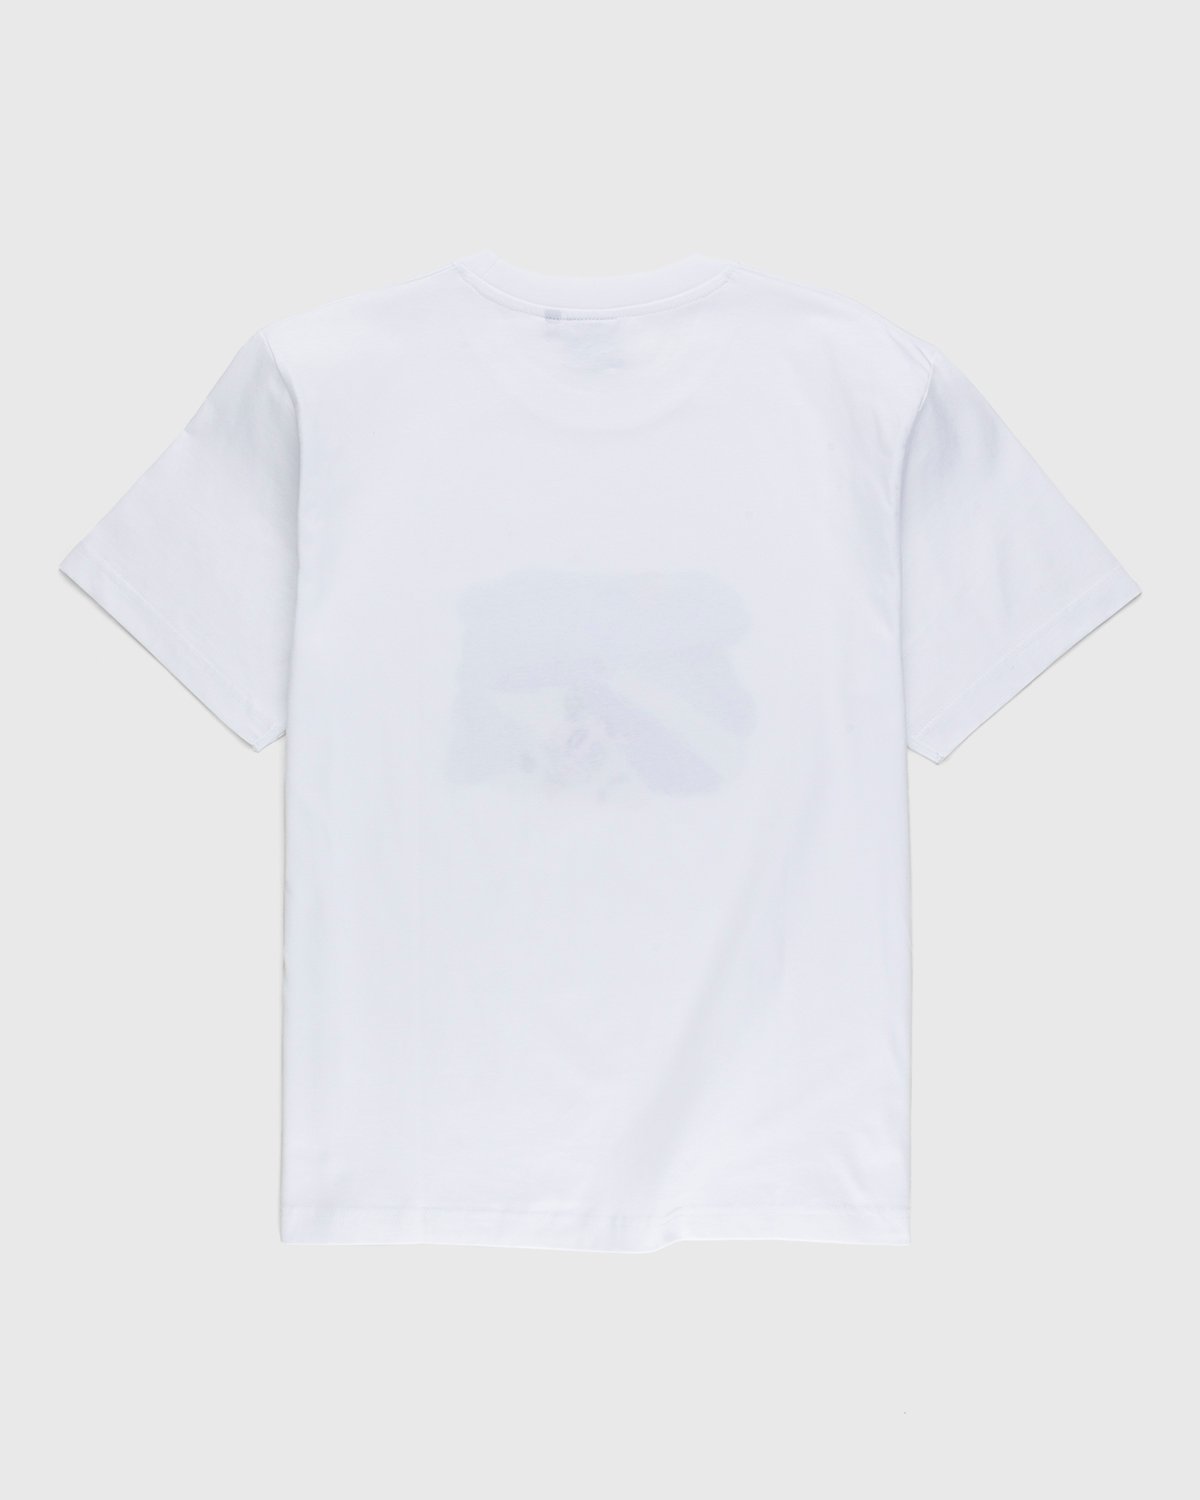 Carne Bollente - Cunni sur la Pelouse T-Shirt White - Clothing - White - Image 2